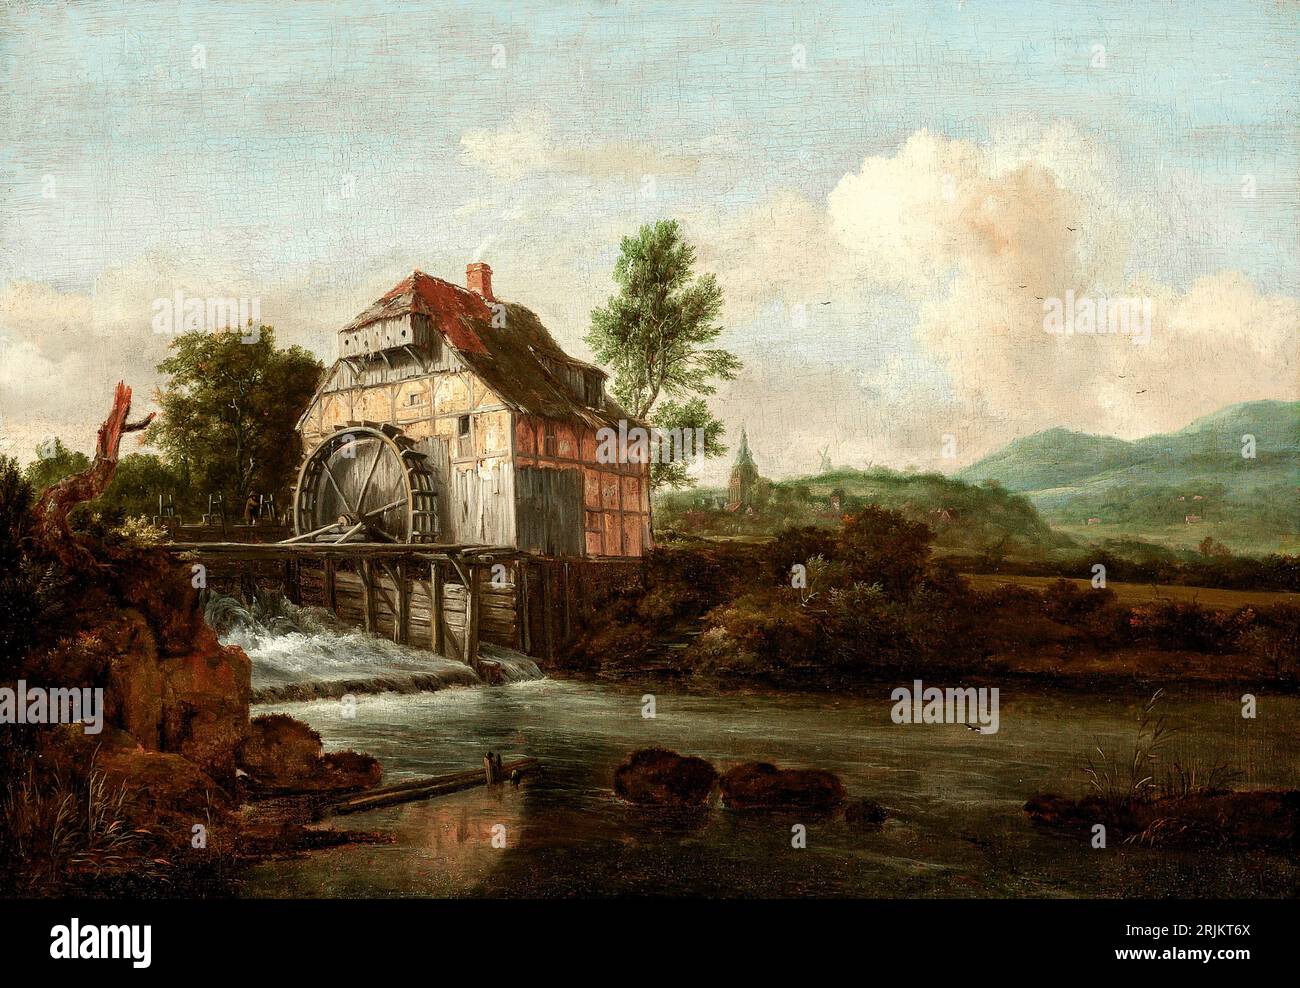 Paesaggio con mulino ad acqua, CA. 1680. Jacob Isaaksz van Ruisdael, olandese, 1628 o 1629-1682. Il paesaggio con un mulino ad acqua è un dipinto a olio su tela Foto Stock